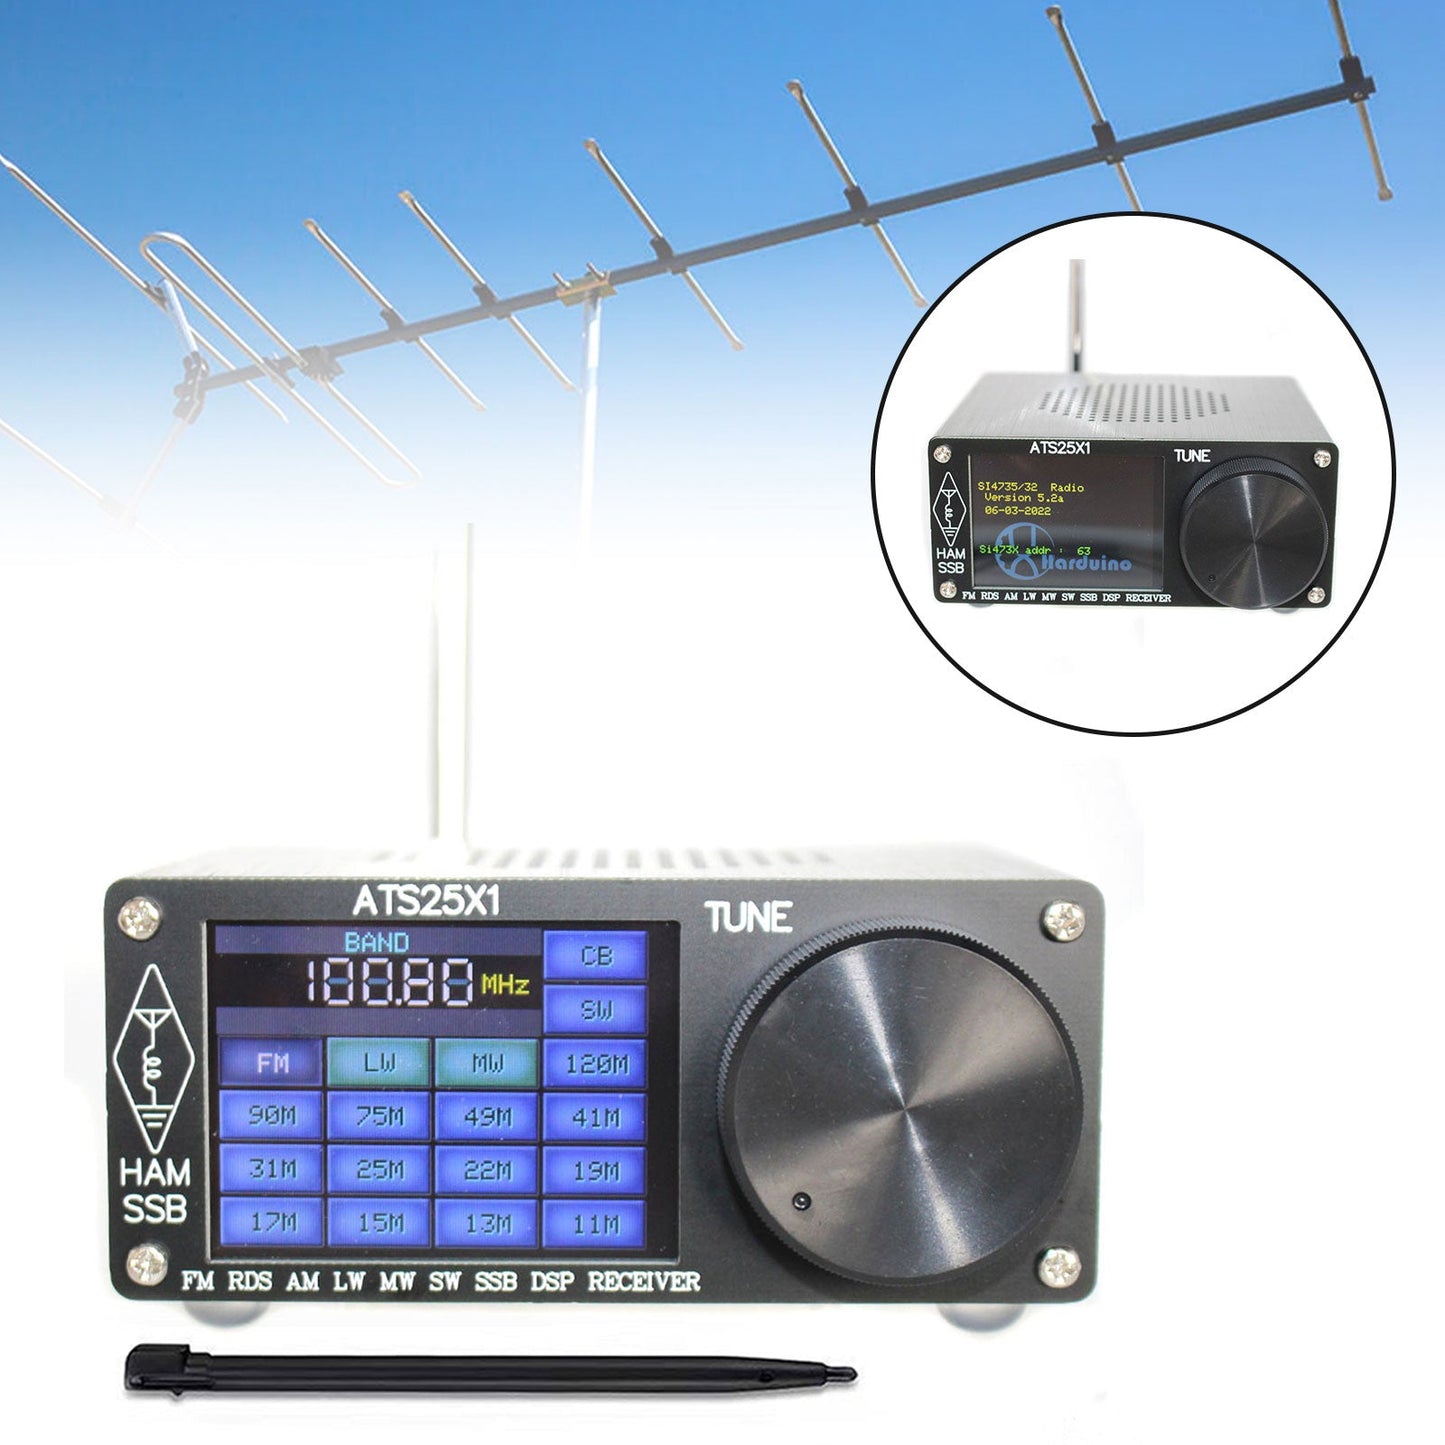 Récepteur radio DSP toutes bandes ATS-25X1 d'origine FM LW MW SW avec écran tactile 2,4 pouces